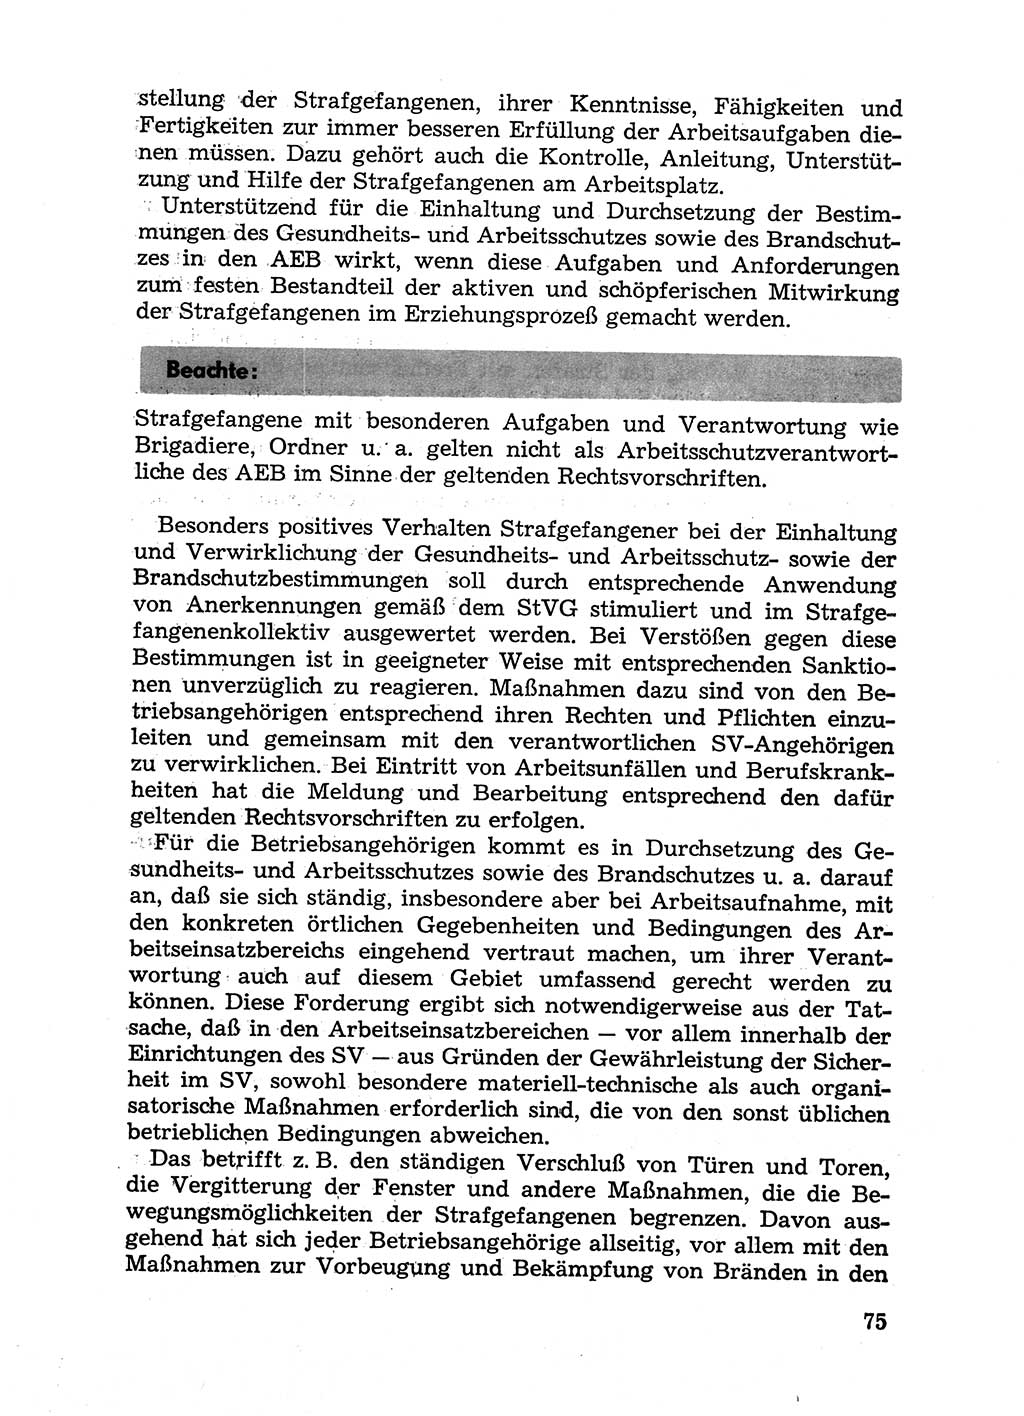 Handbuch für Betriebsangehörige, Abteilung Strafvollzug (SV) [Ministerium des Innern (MdI) Deutsche Demokratische Republik (DDR)] 1981, Seite 75 (Hb. BA Abt. SV MdI DDR 1981, S. 75)